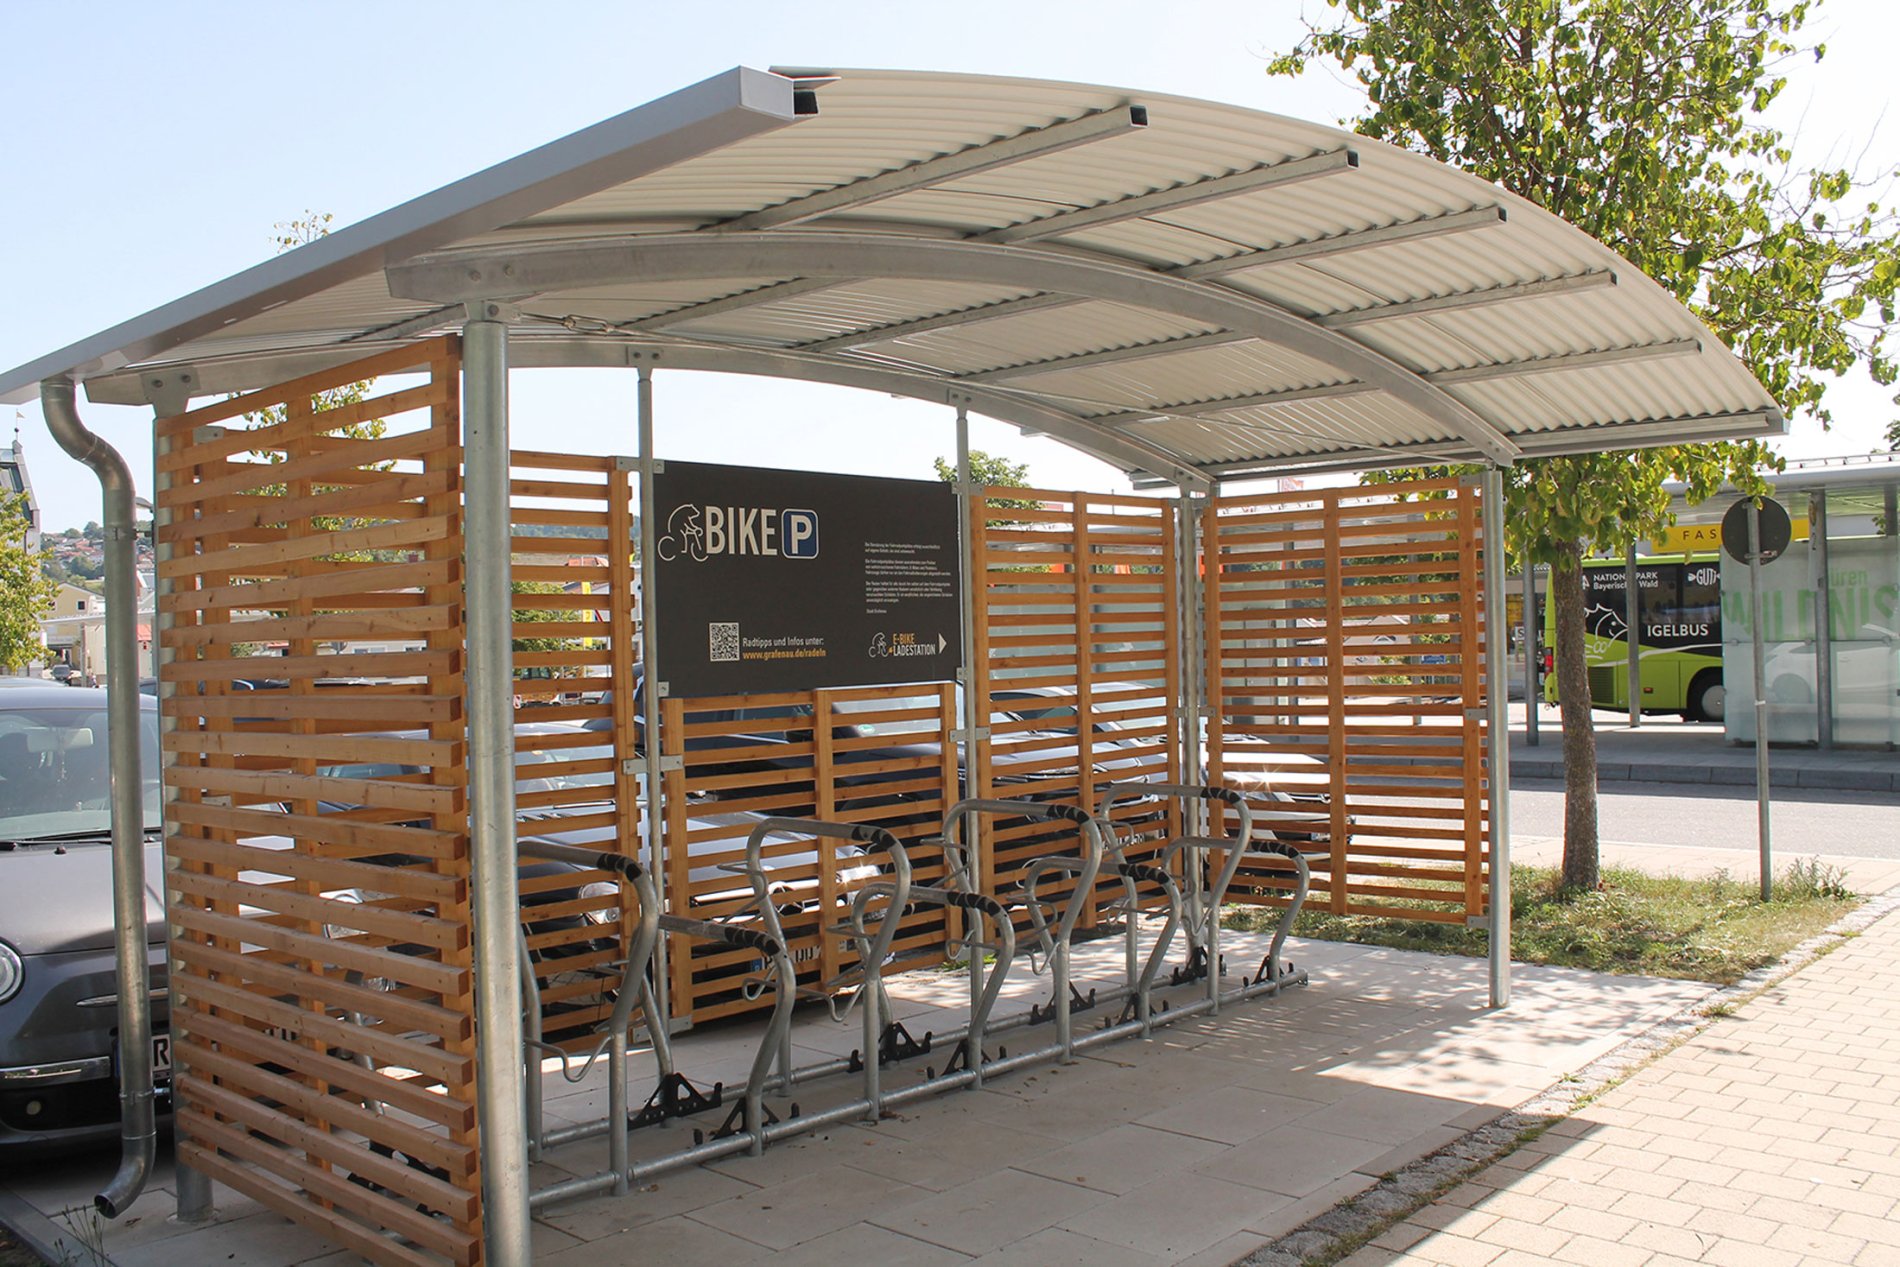 Fahrradabstellanlage am Bahnhof/Busbahnhof Grafenau mit neun überdachten Fahrradparkern.